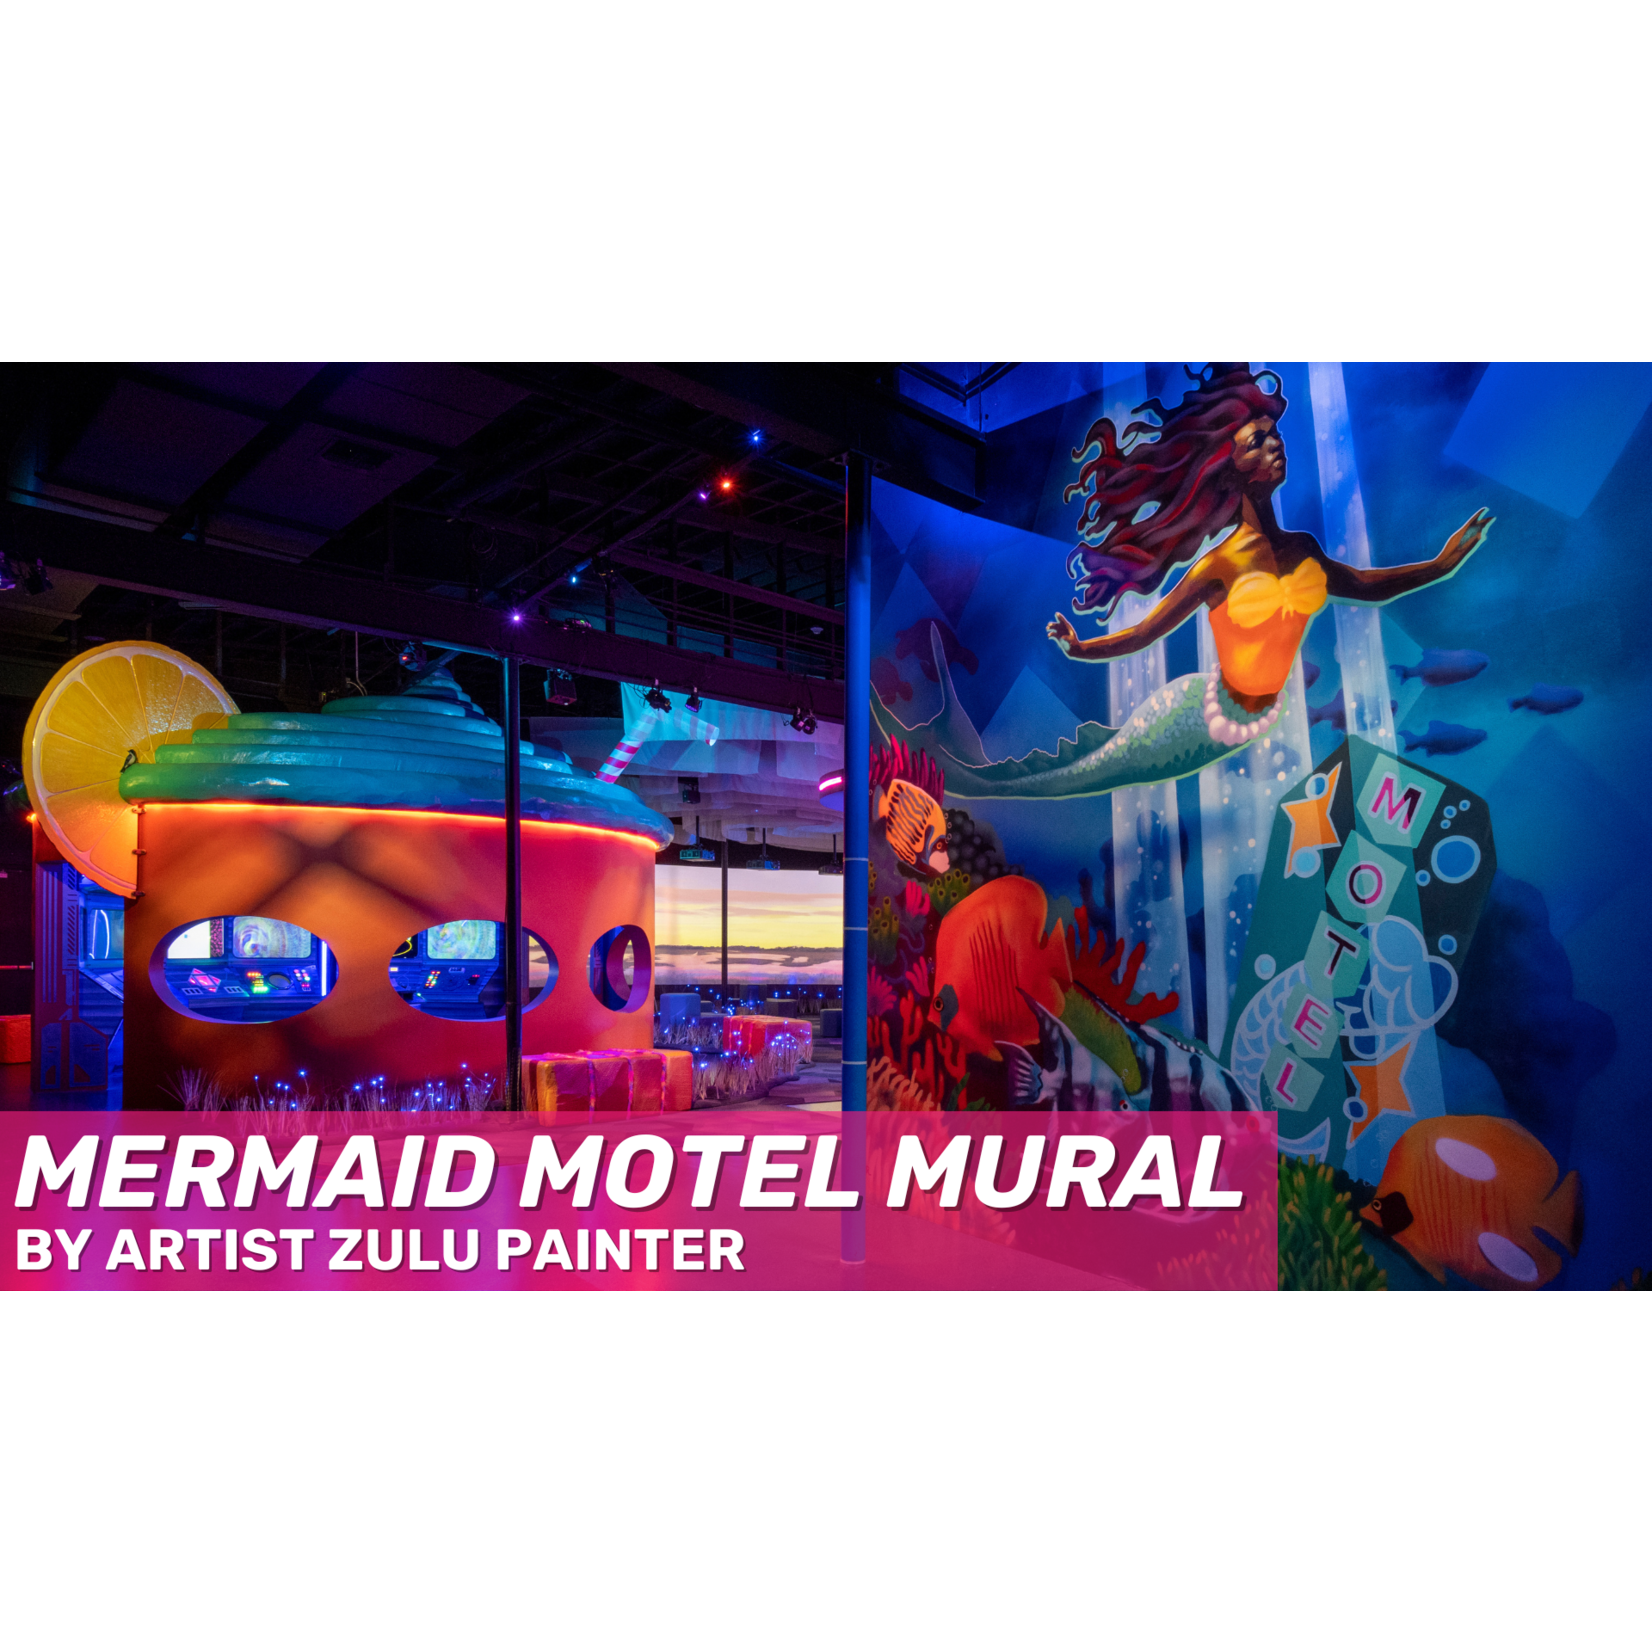 Zulu Painter Zulu Painter's "Mermaid Motel" Mural 7" x 5" Post Art